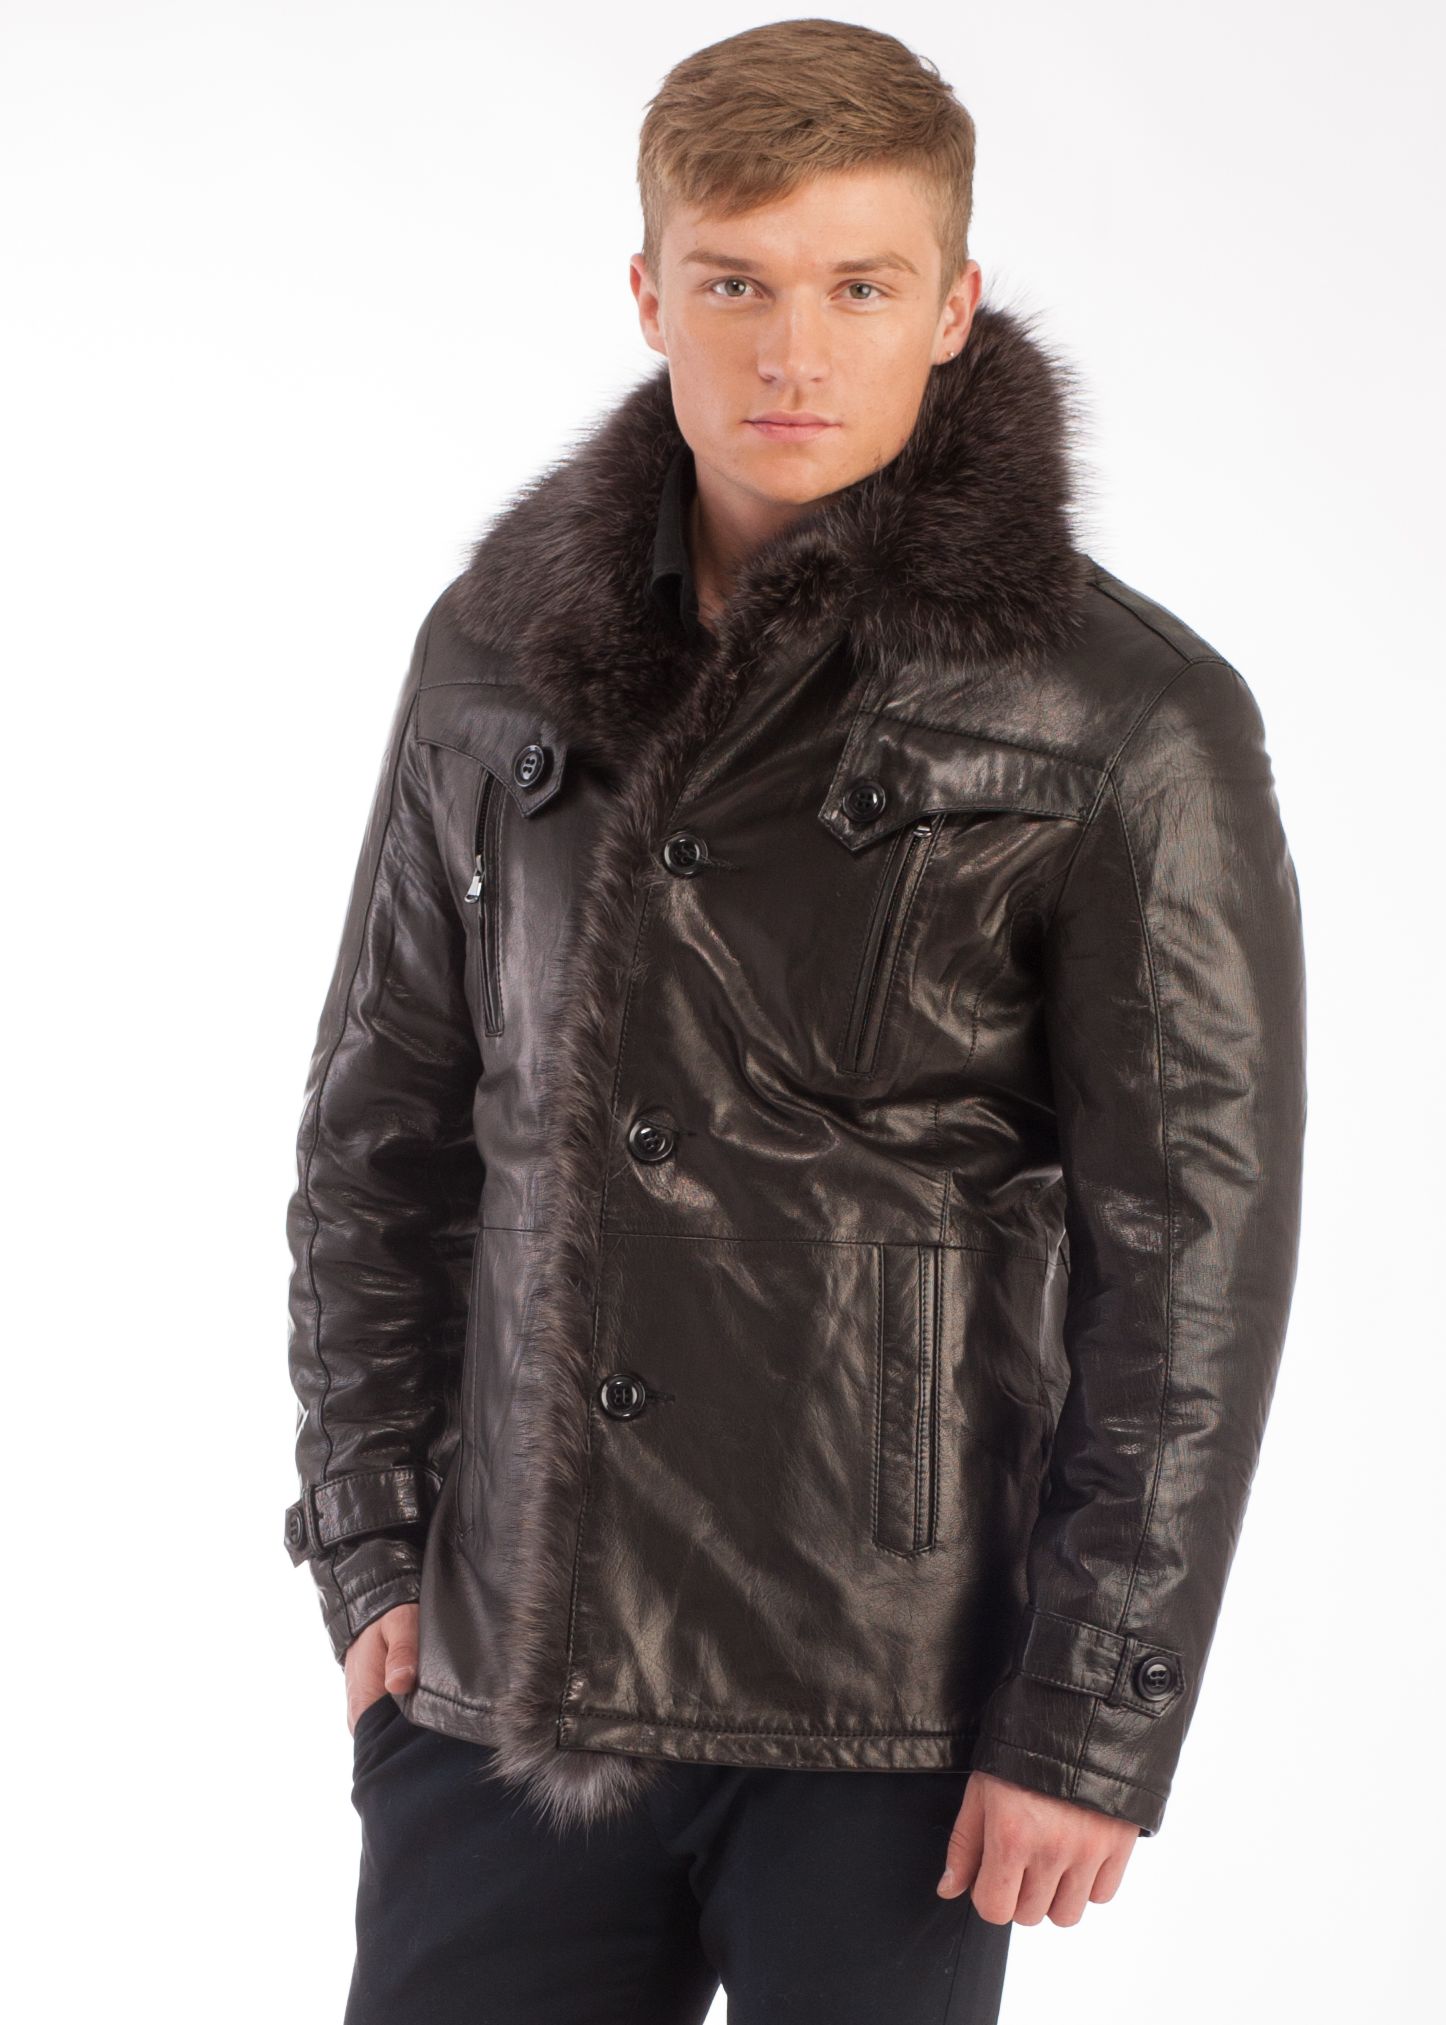 Где можно купить куртку мужскую. Мужской кожаный пуховик Ruffo модель 1a8p11. Зимняя кожаная куртка мужская. Кожаный пуховик мужской зимний. Кожанка мужская зимняя.